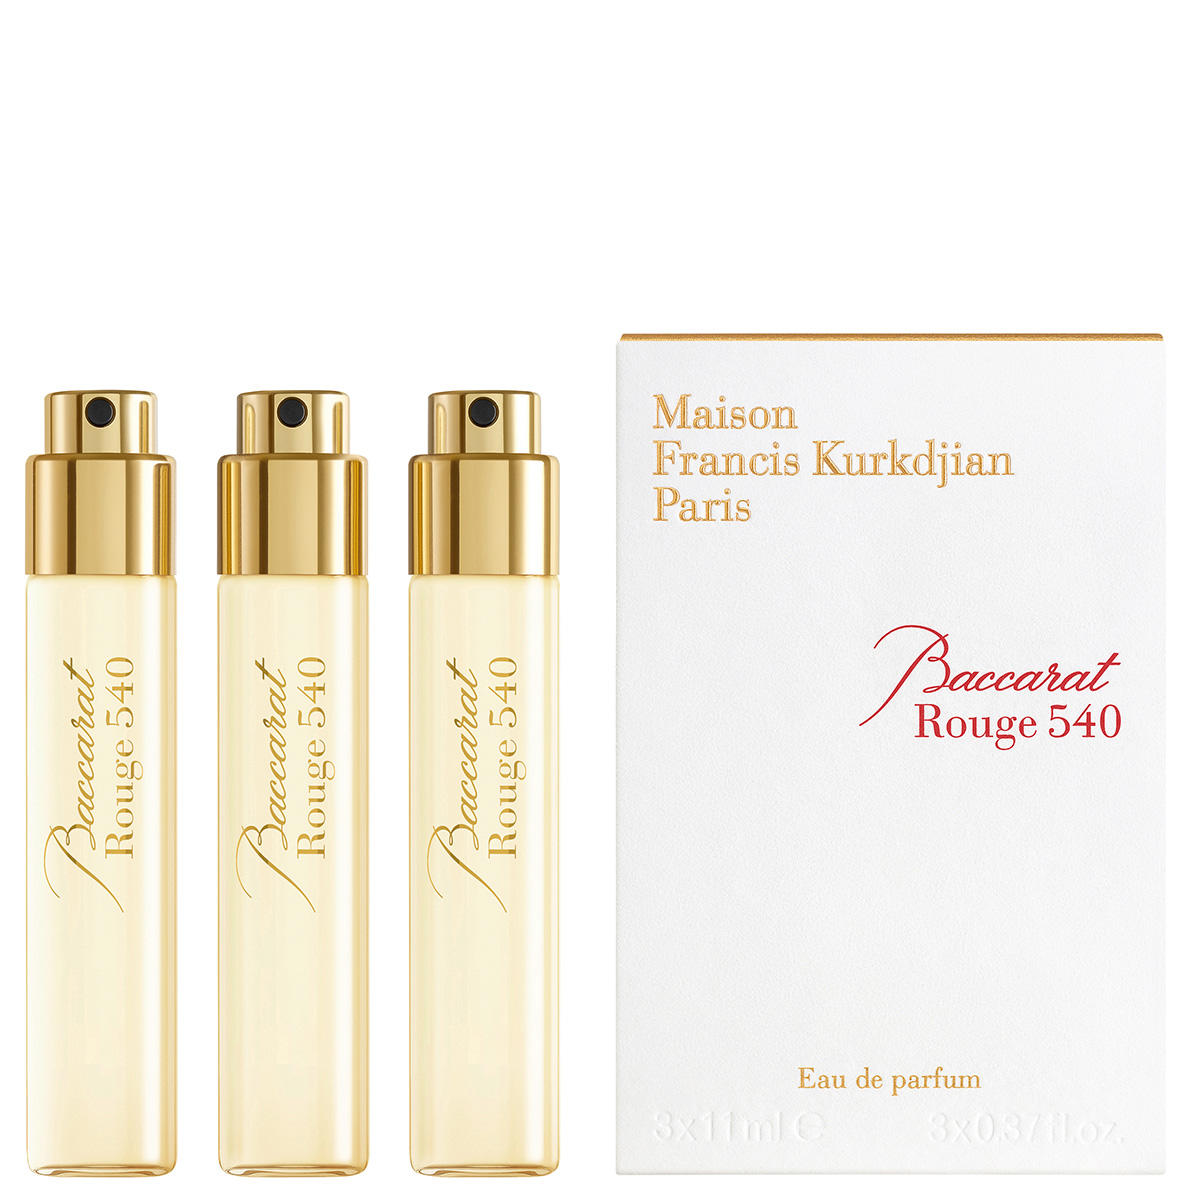 Maison Francis Kurkdjian Paris Baccarat Rouge 540 Eau de Parfum Refill Packung mit 3 x 11 ml - 2